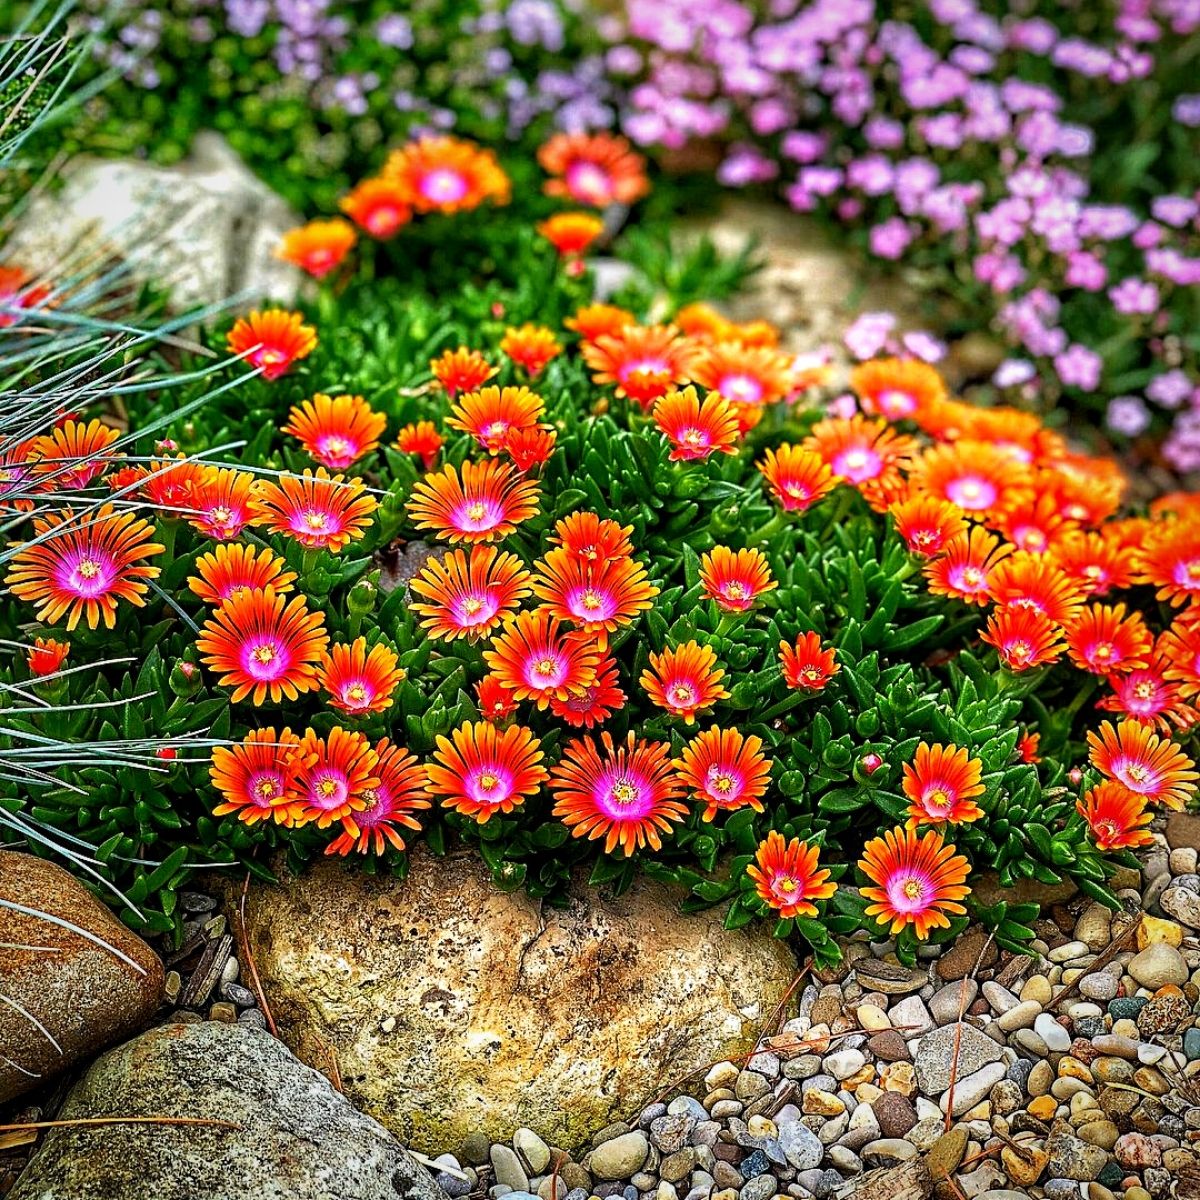 Blooming flowers in an alpine styled rock garden